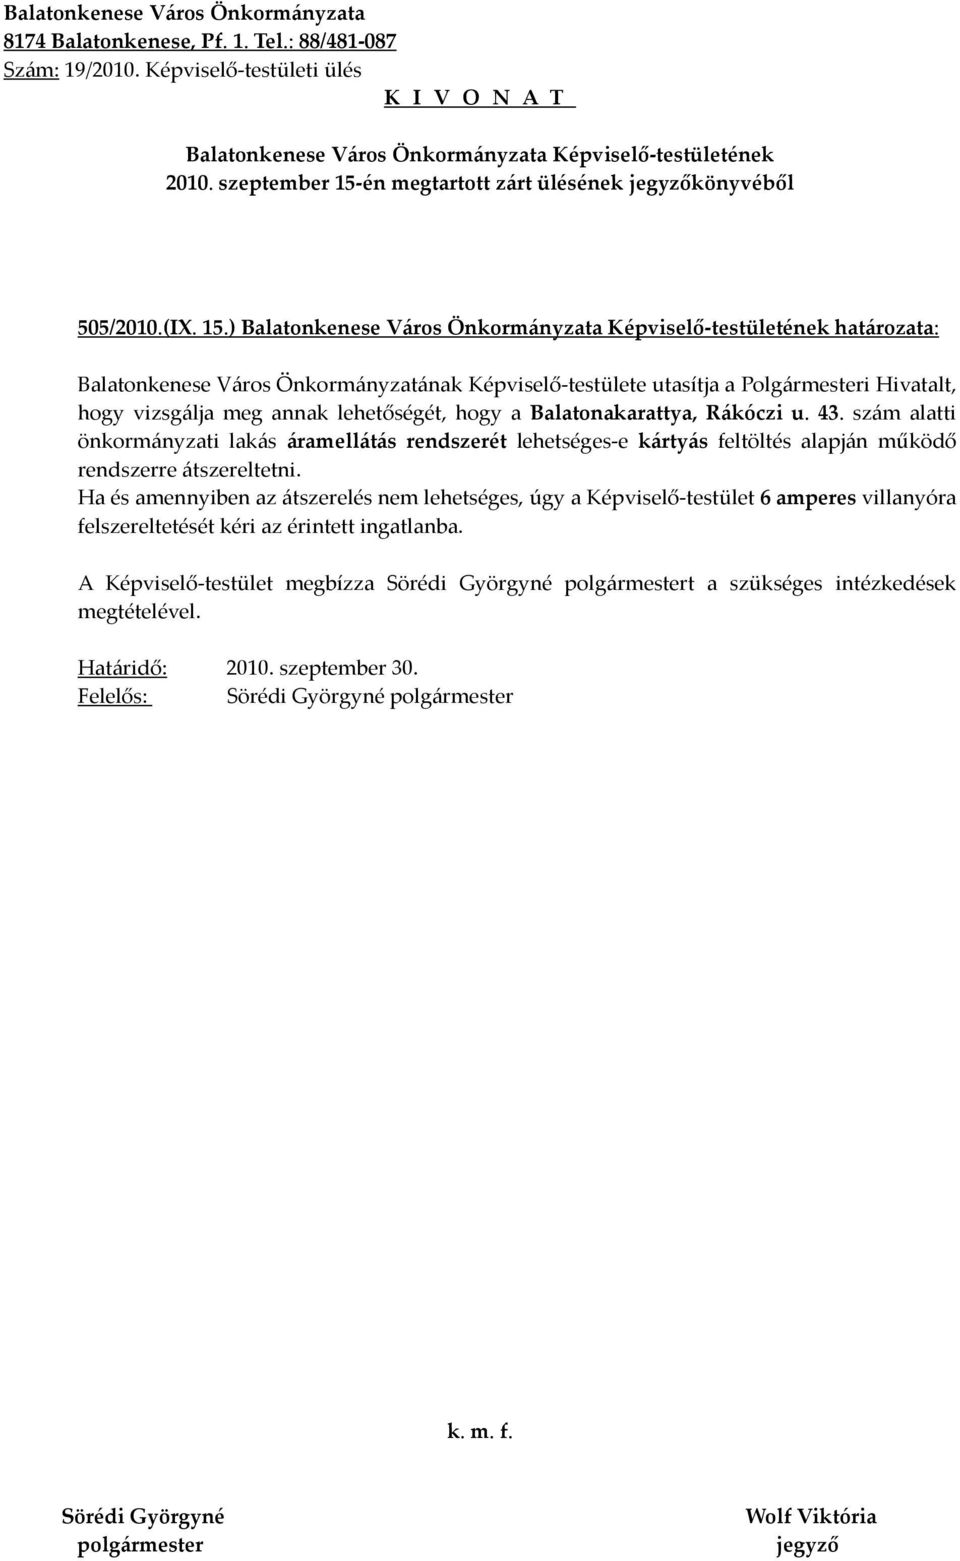 ) határozata: Balatonkenese Város Önkormányzatának Képviselő-testülete utasítja a Polgármesteri Hivatalt, hogy vizsgálja meg annak lehetőségét, hogy a